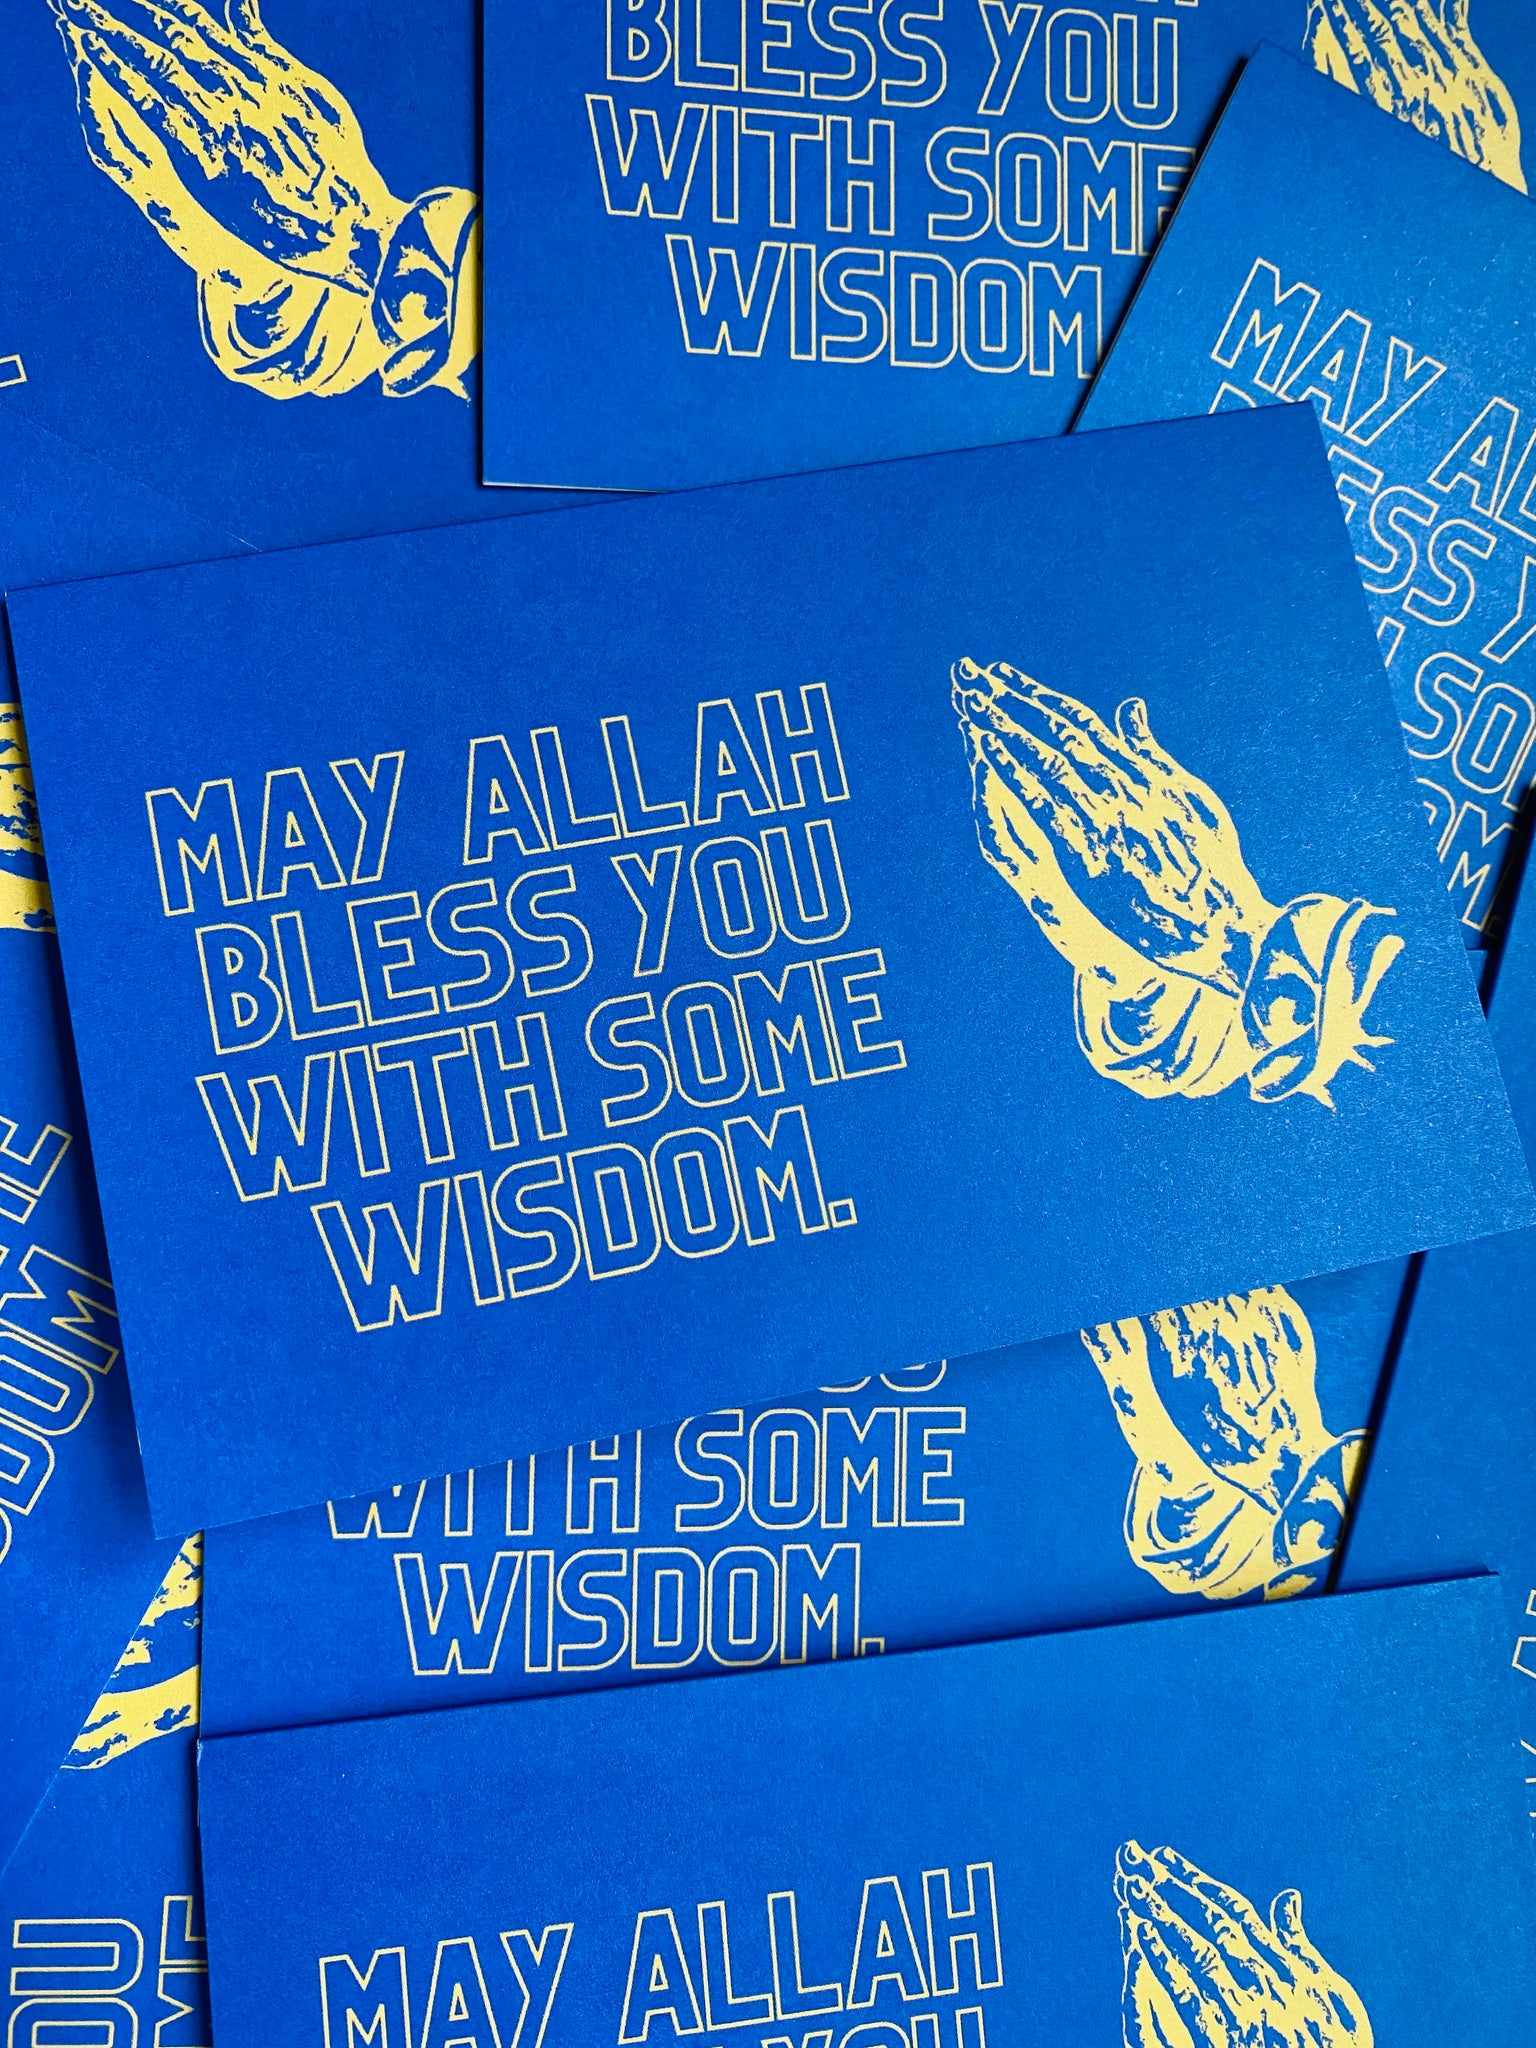 Wisdom Card